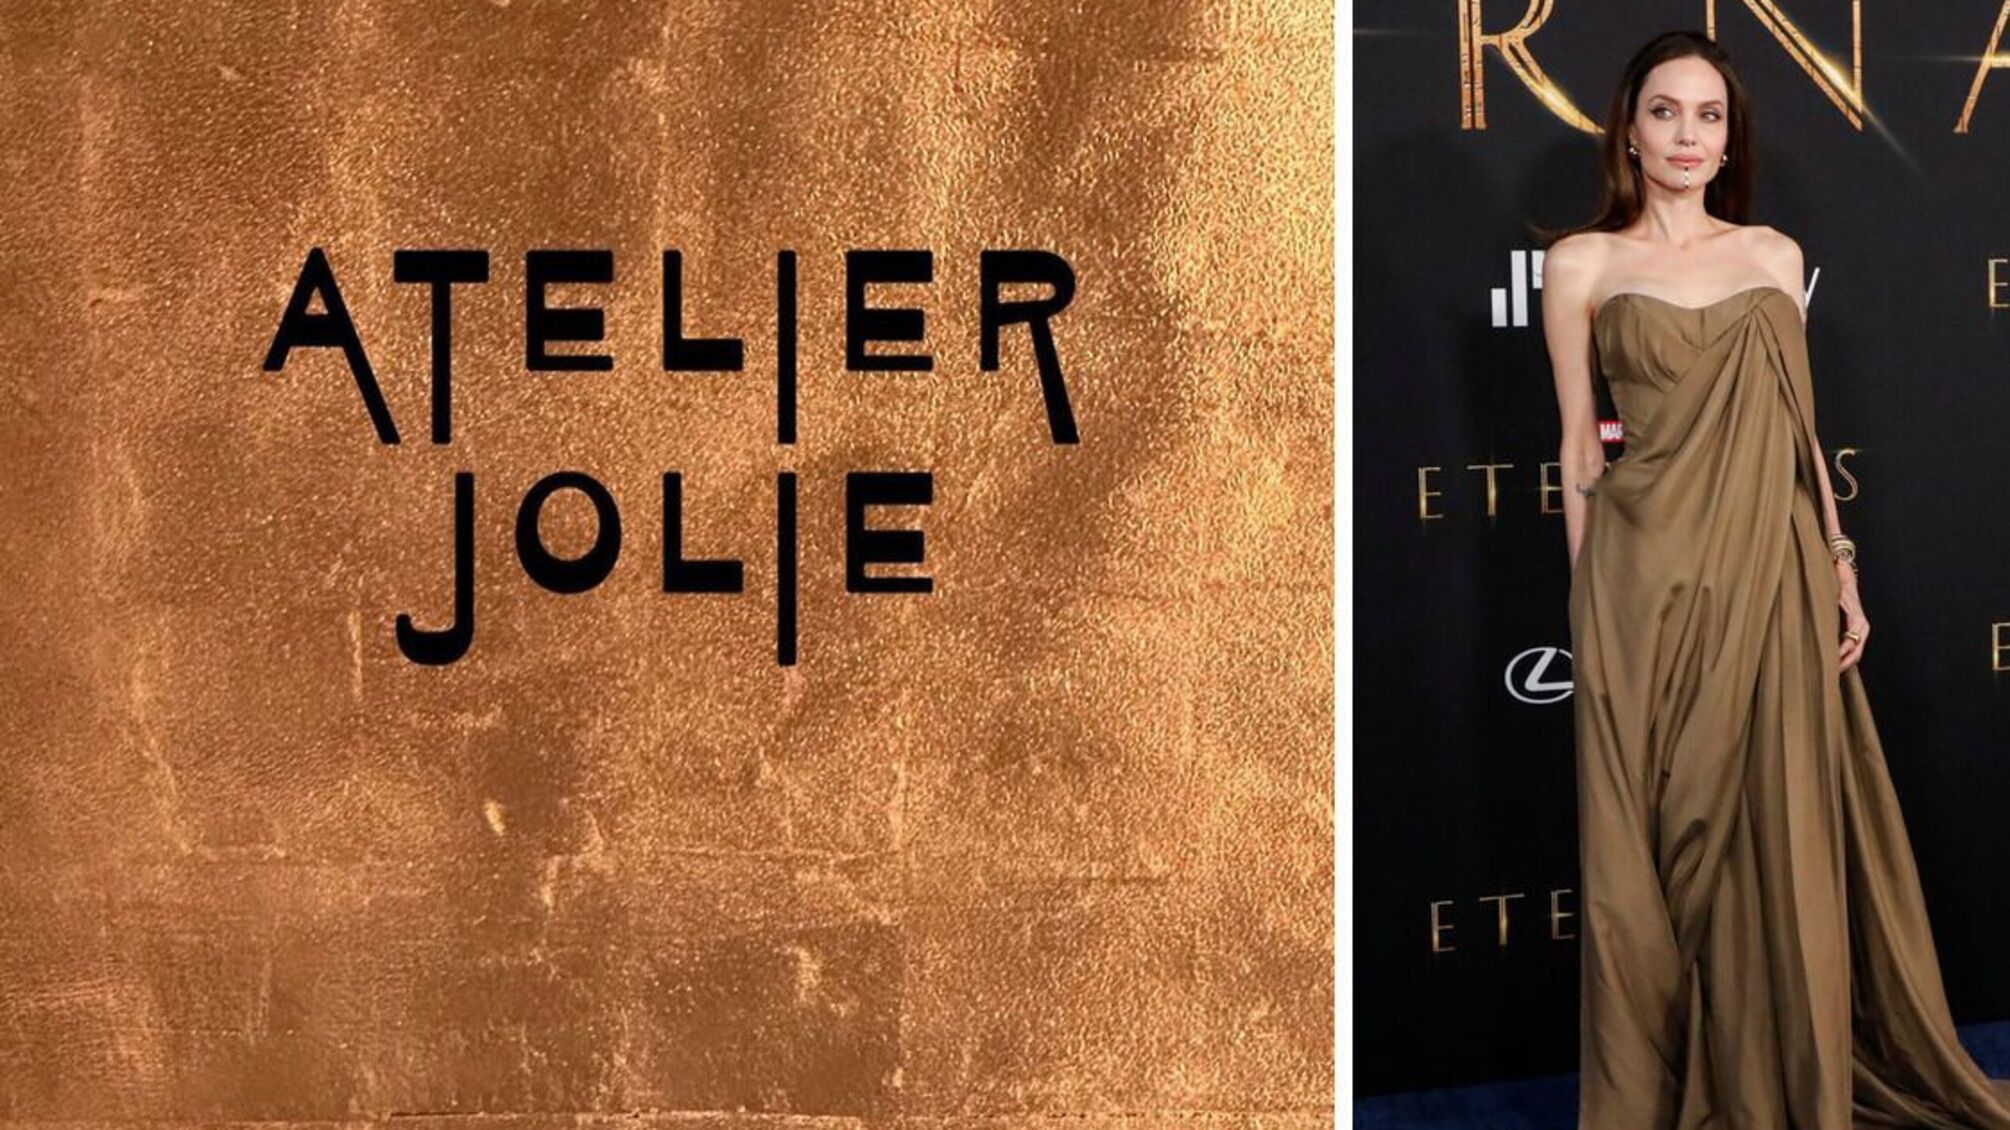 Анджелі Джолі і модний бренд Atelier Jolie